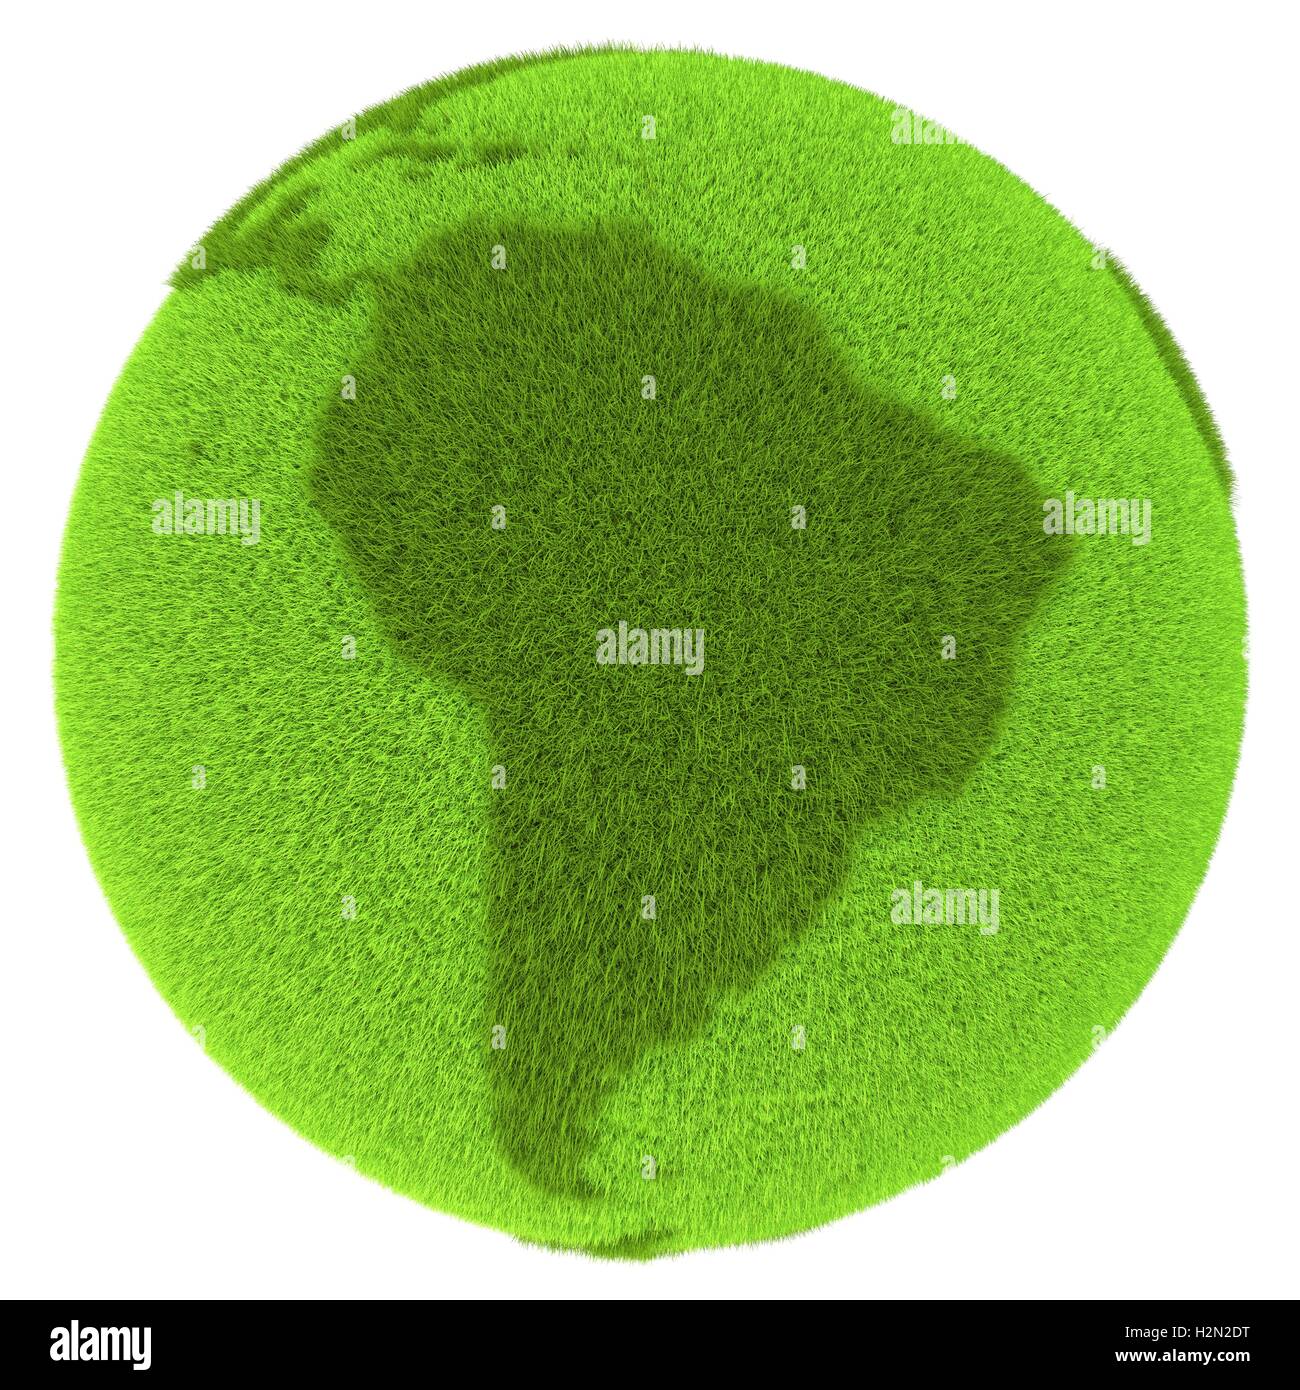 L'Amérique du Sud sur une planète verte Banque D'Images